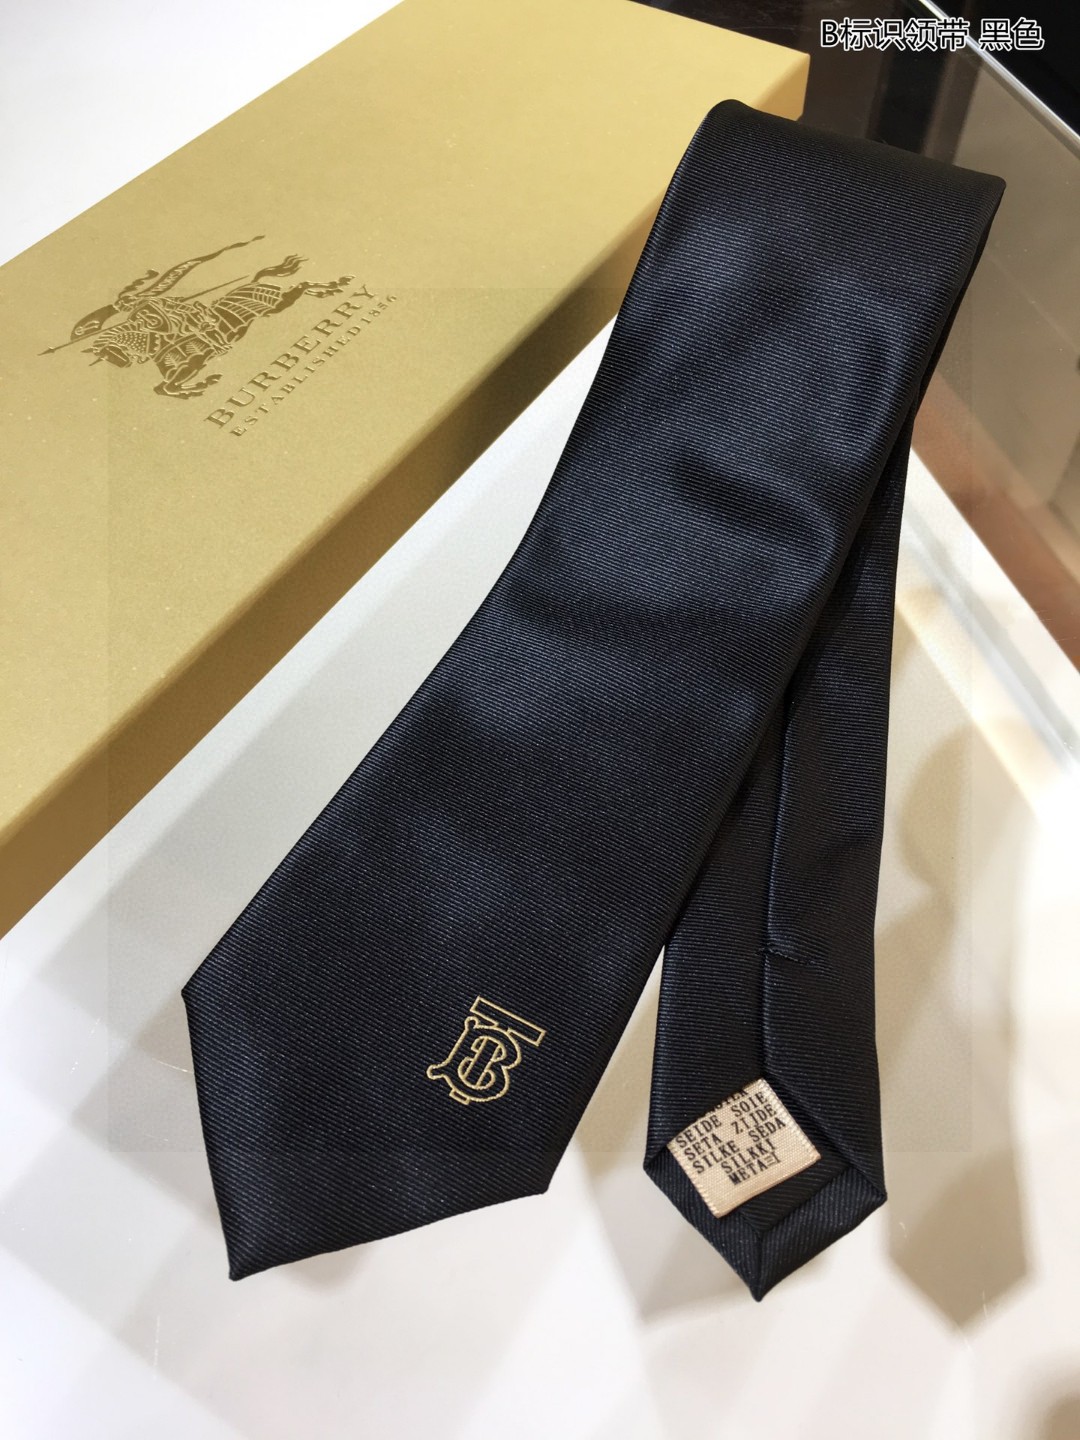 B家新款领带男士B标识领带稀有展现精